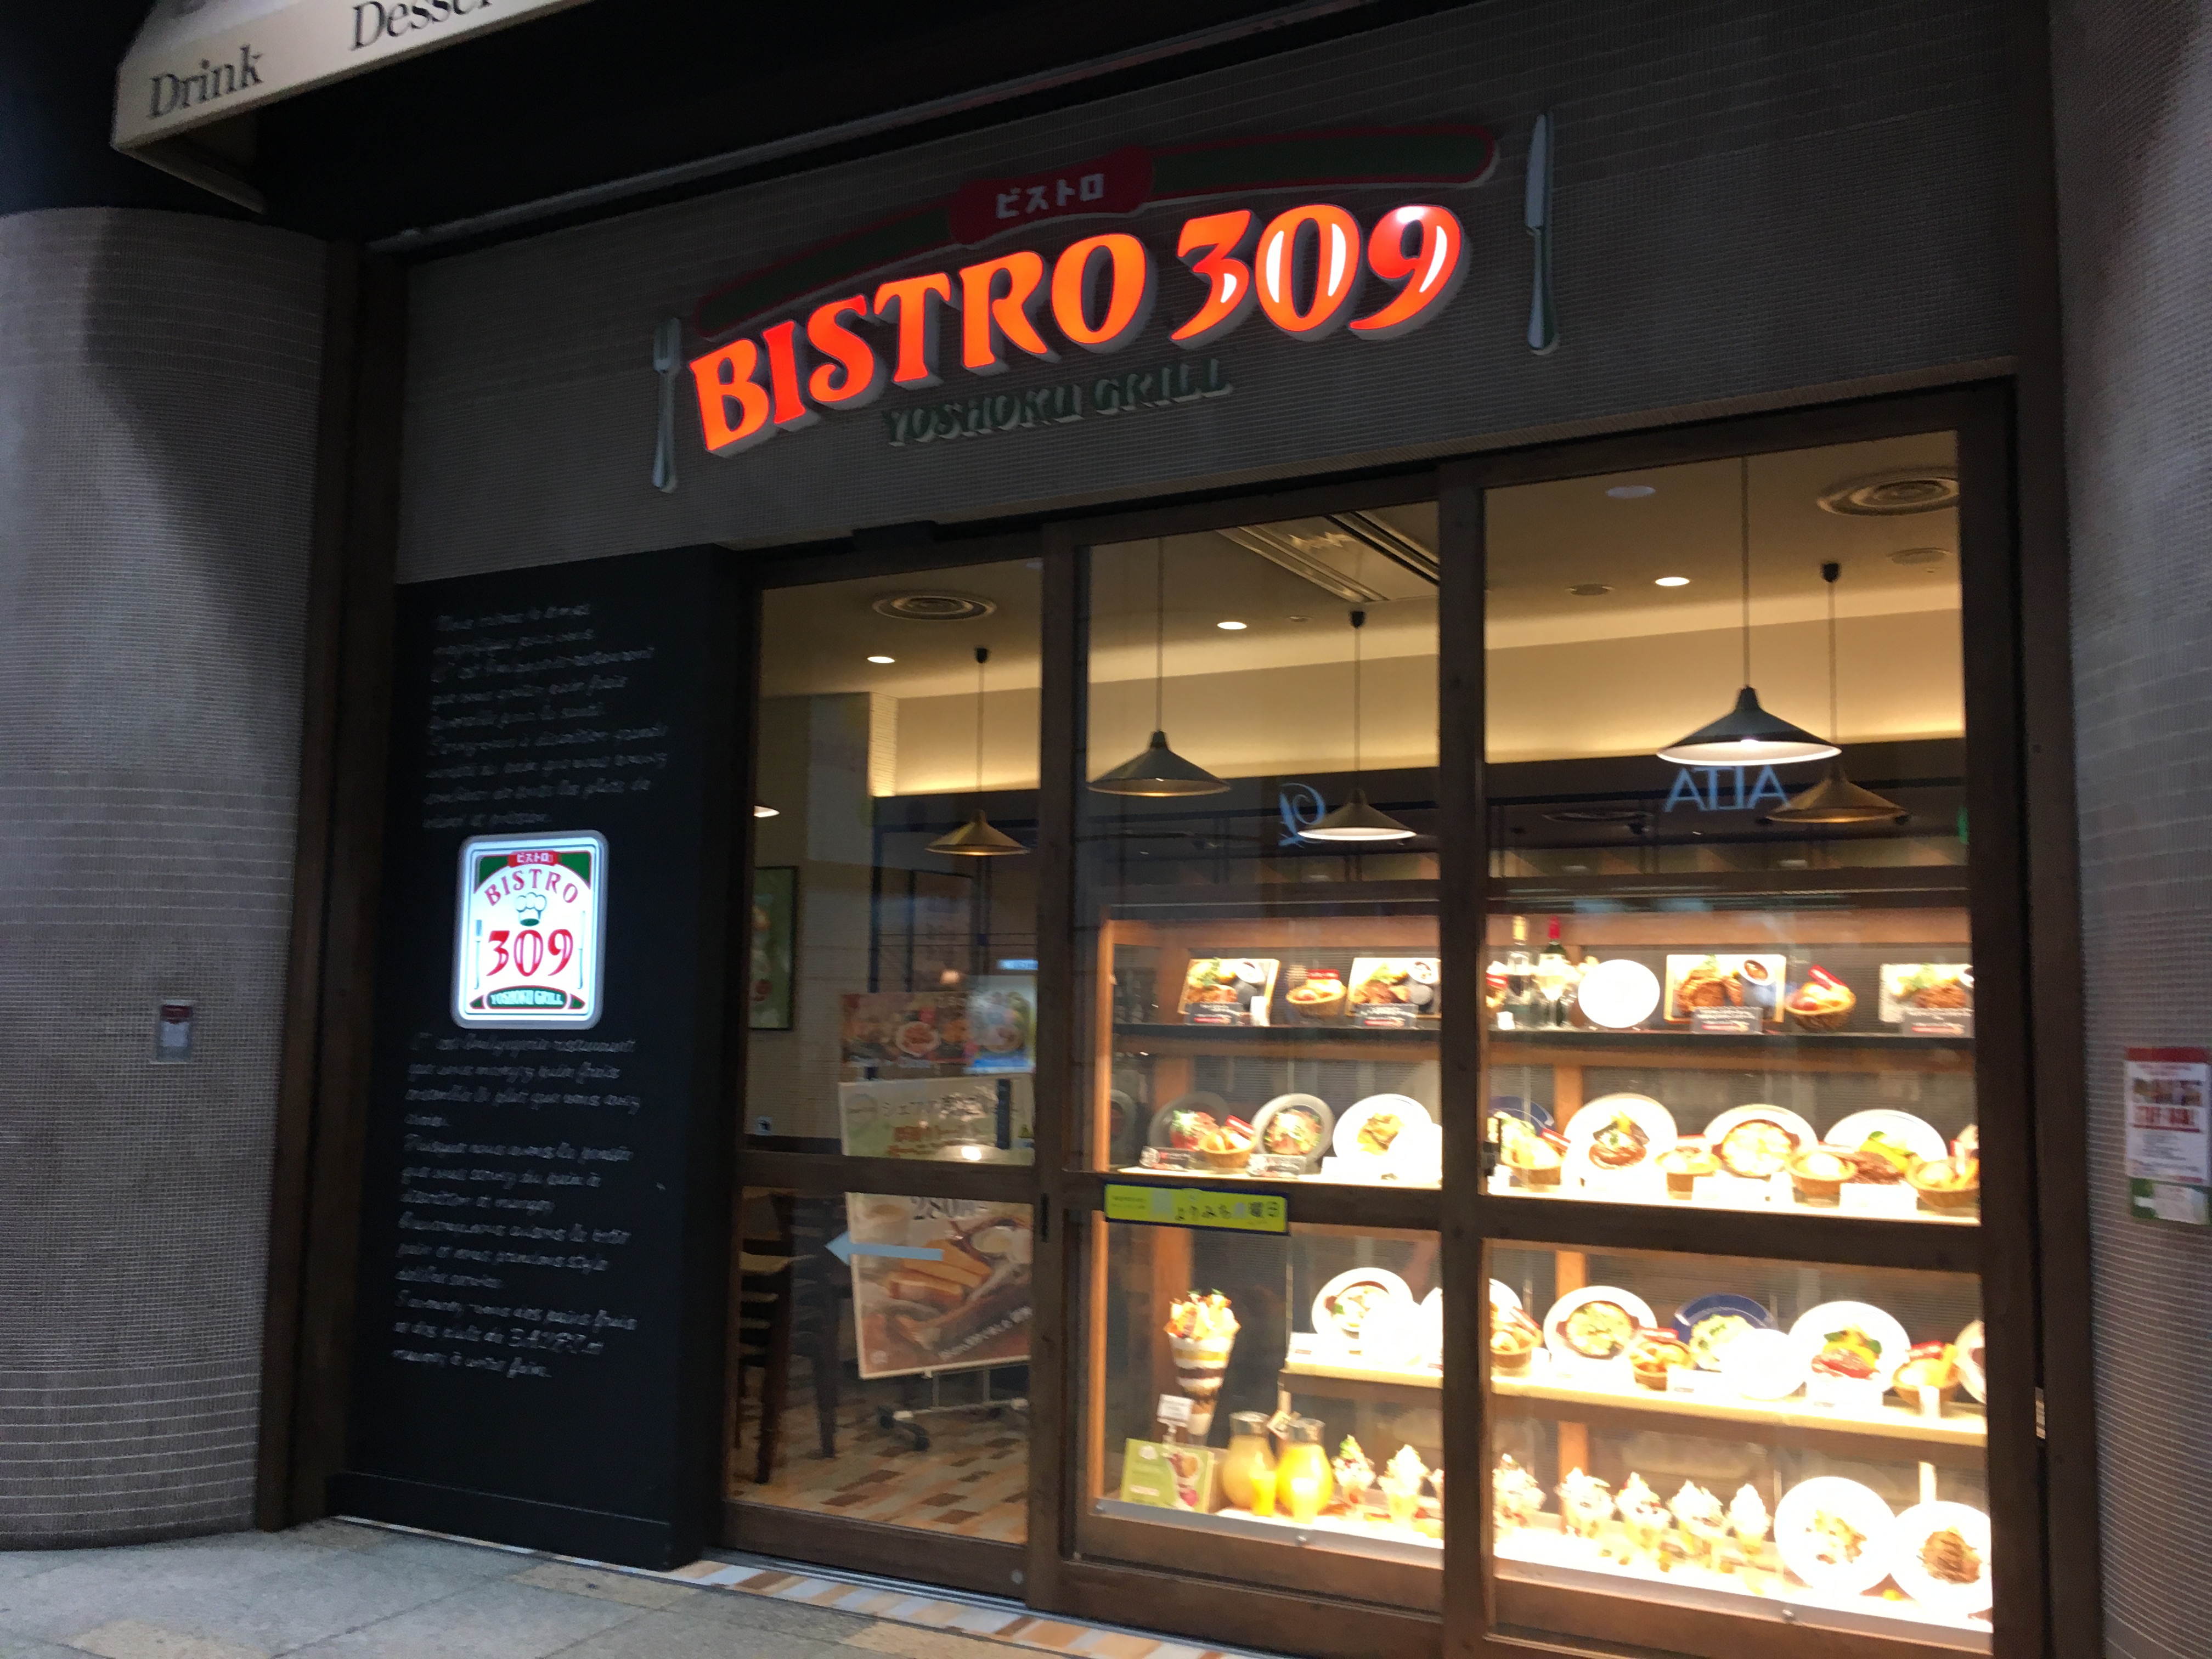 サンシャインシティでひと息入れるいい感じカフェ「BISTRO309 サンシャインシティアルパ店」